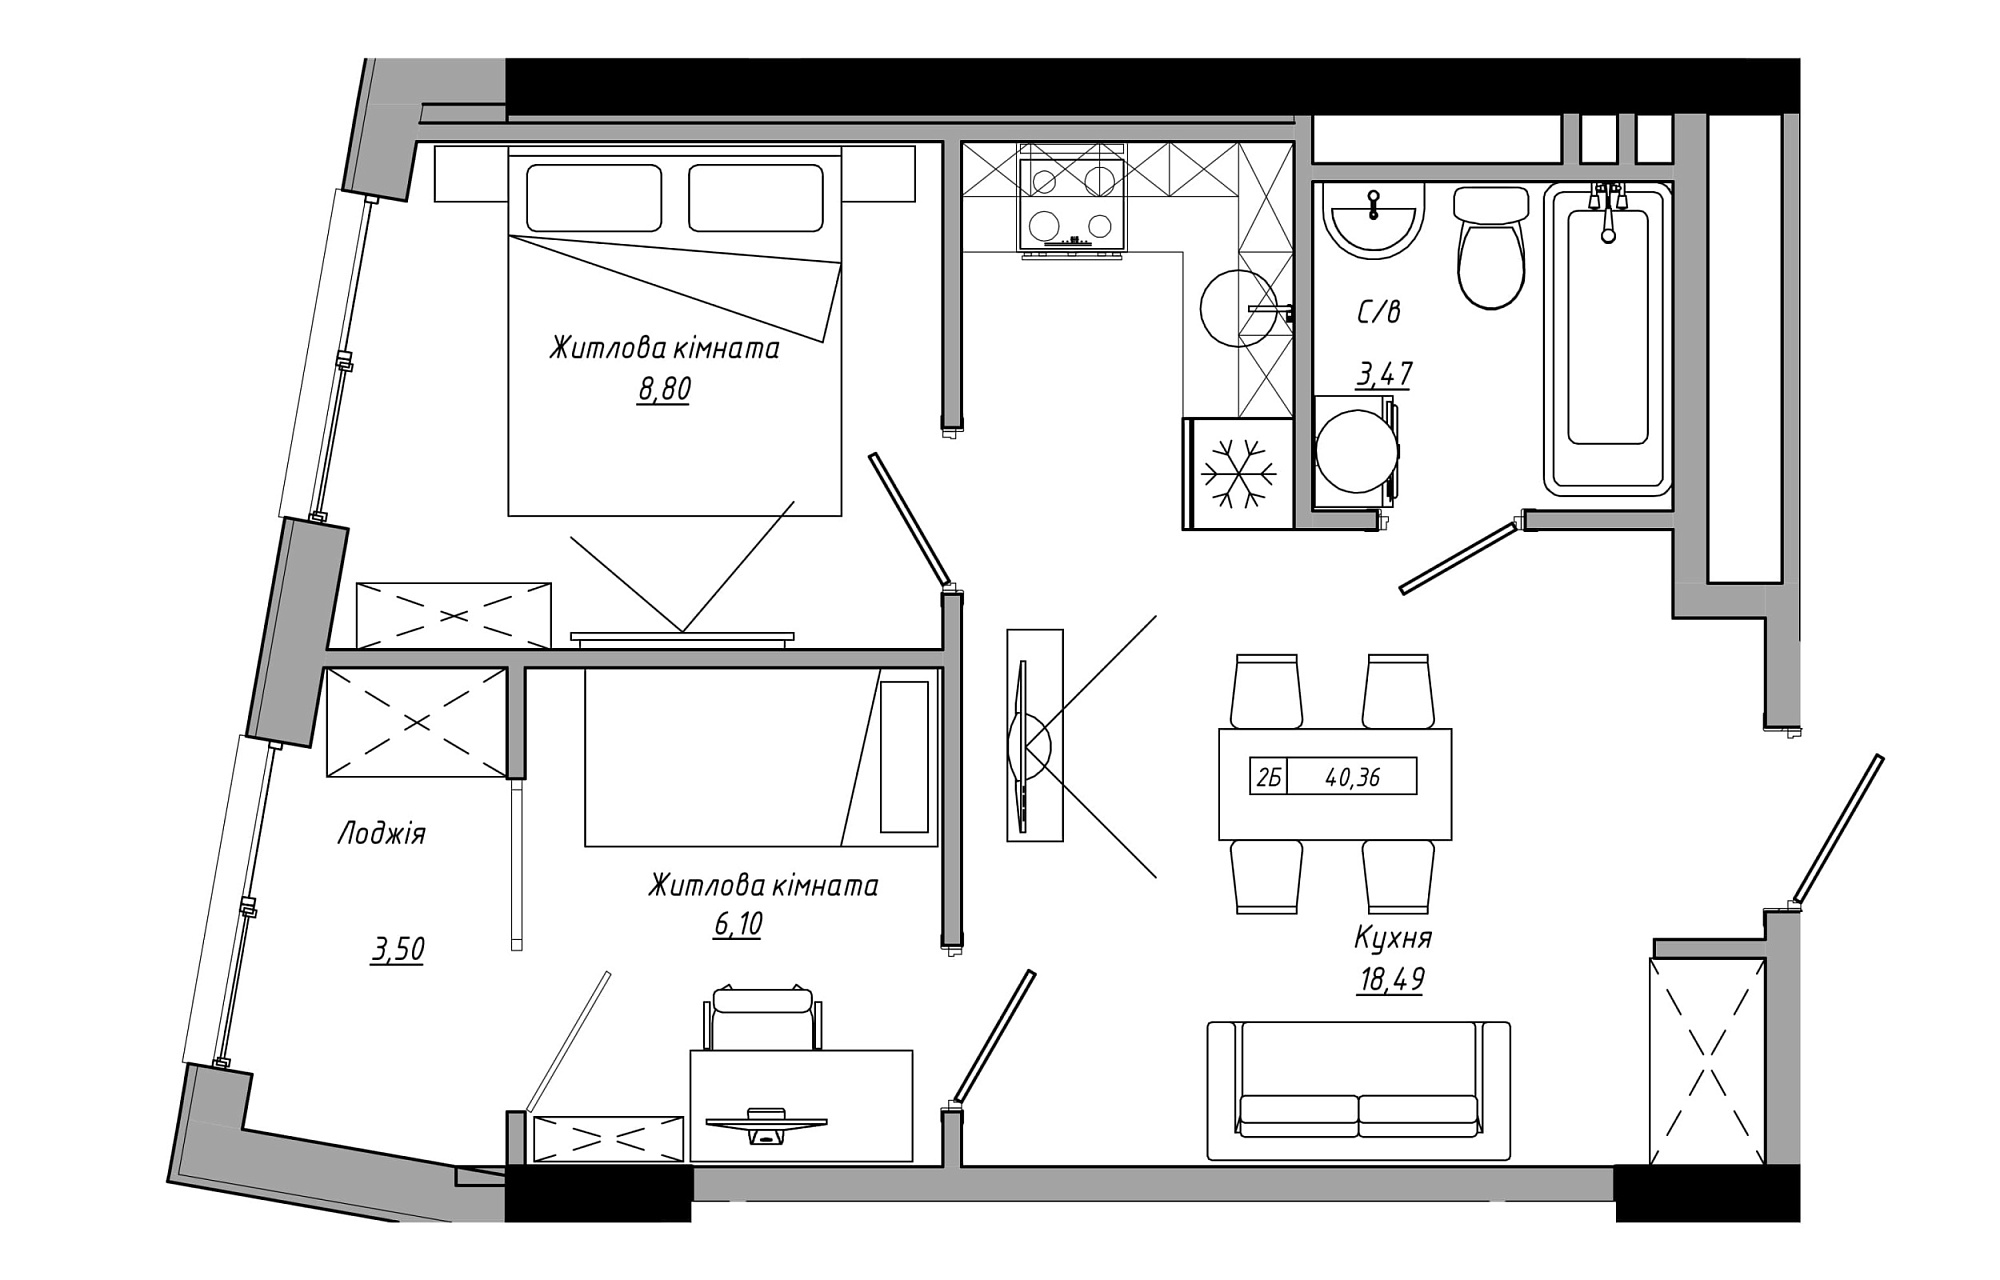 Планування 2-к квартира площею 40.36м2, AB-21-12/00007.